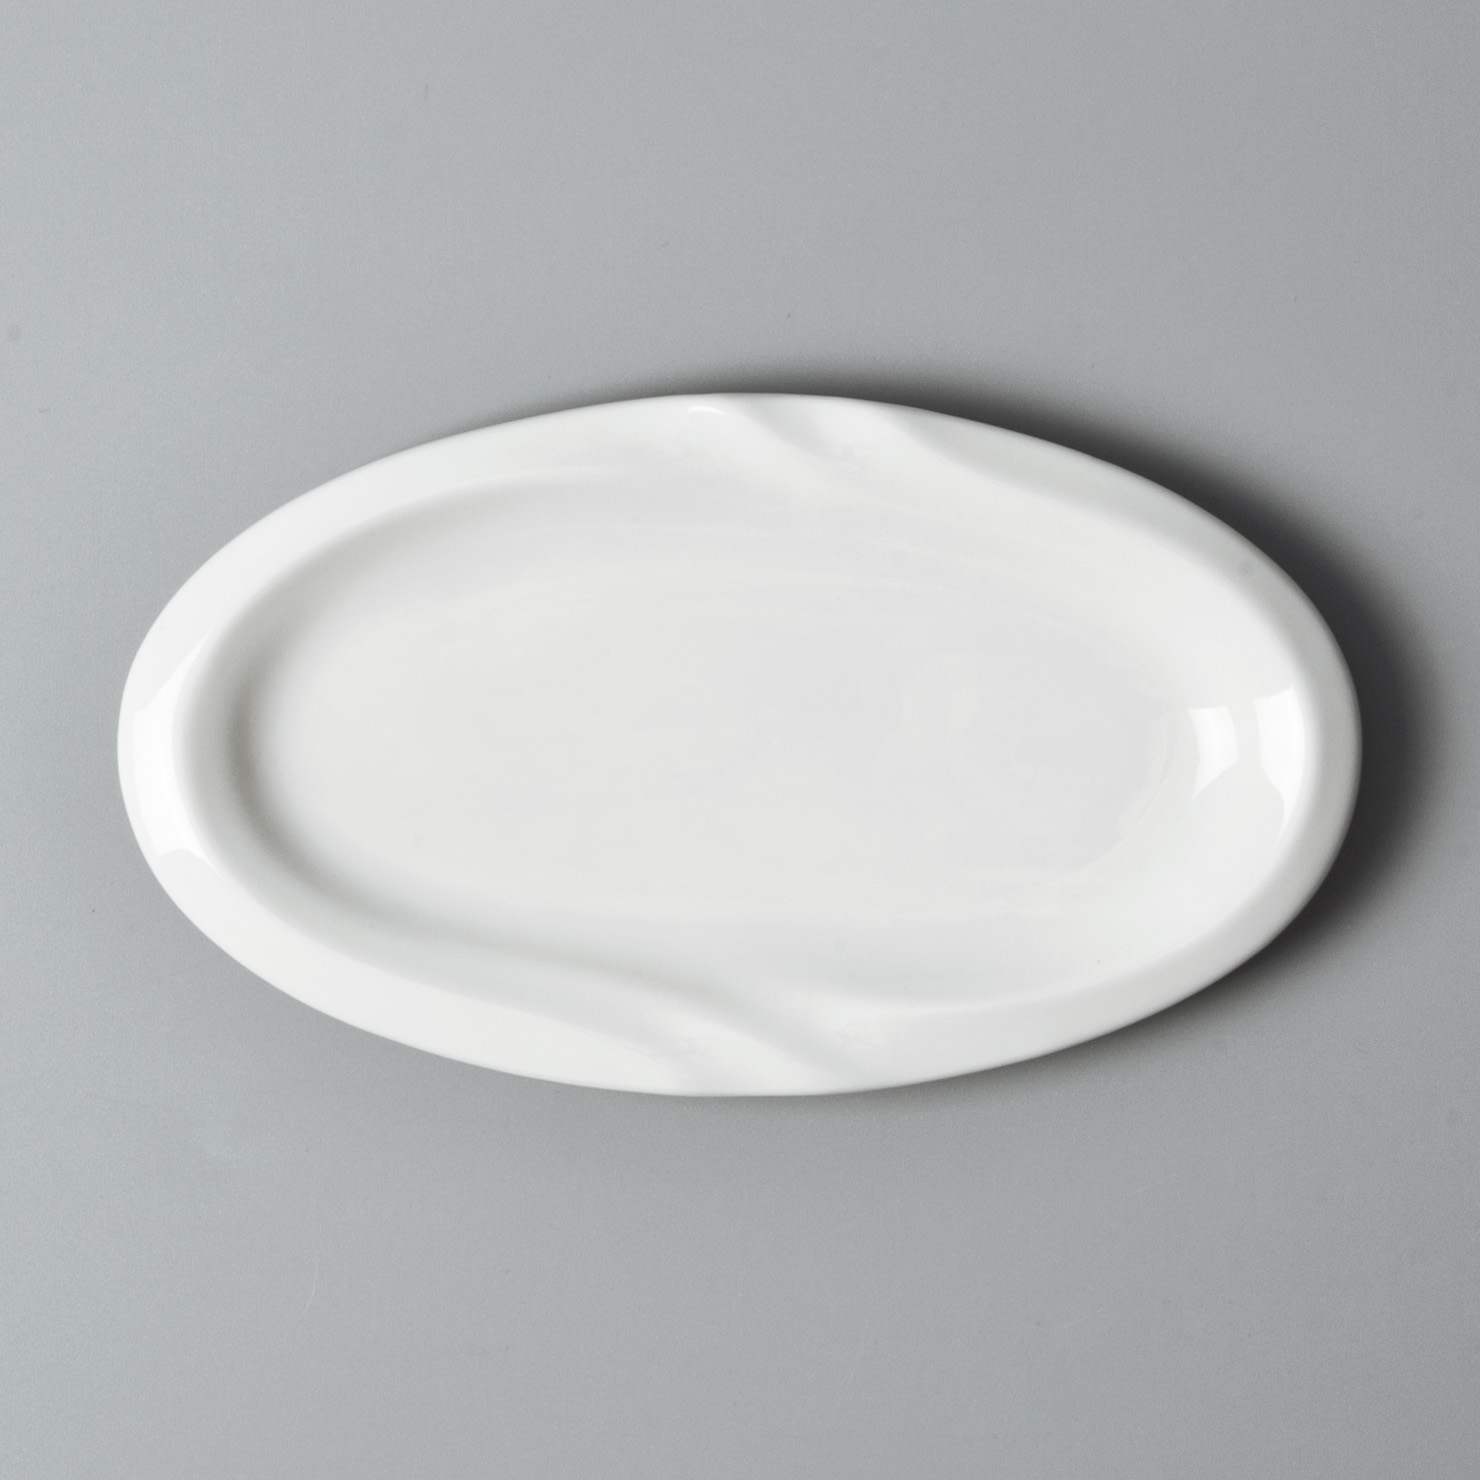 Custom white dinnerware sets for 8 factory for home-8